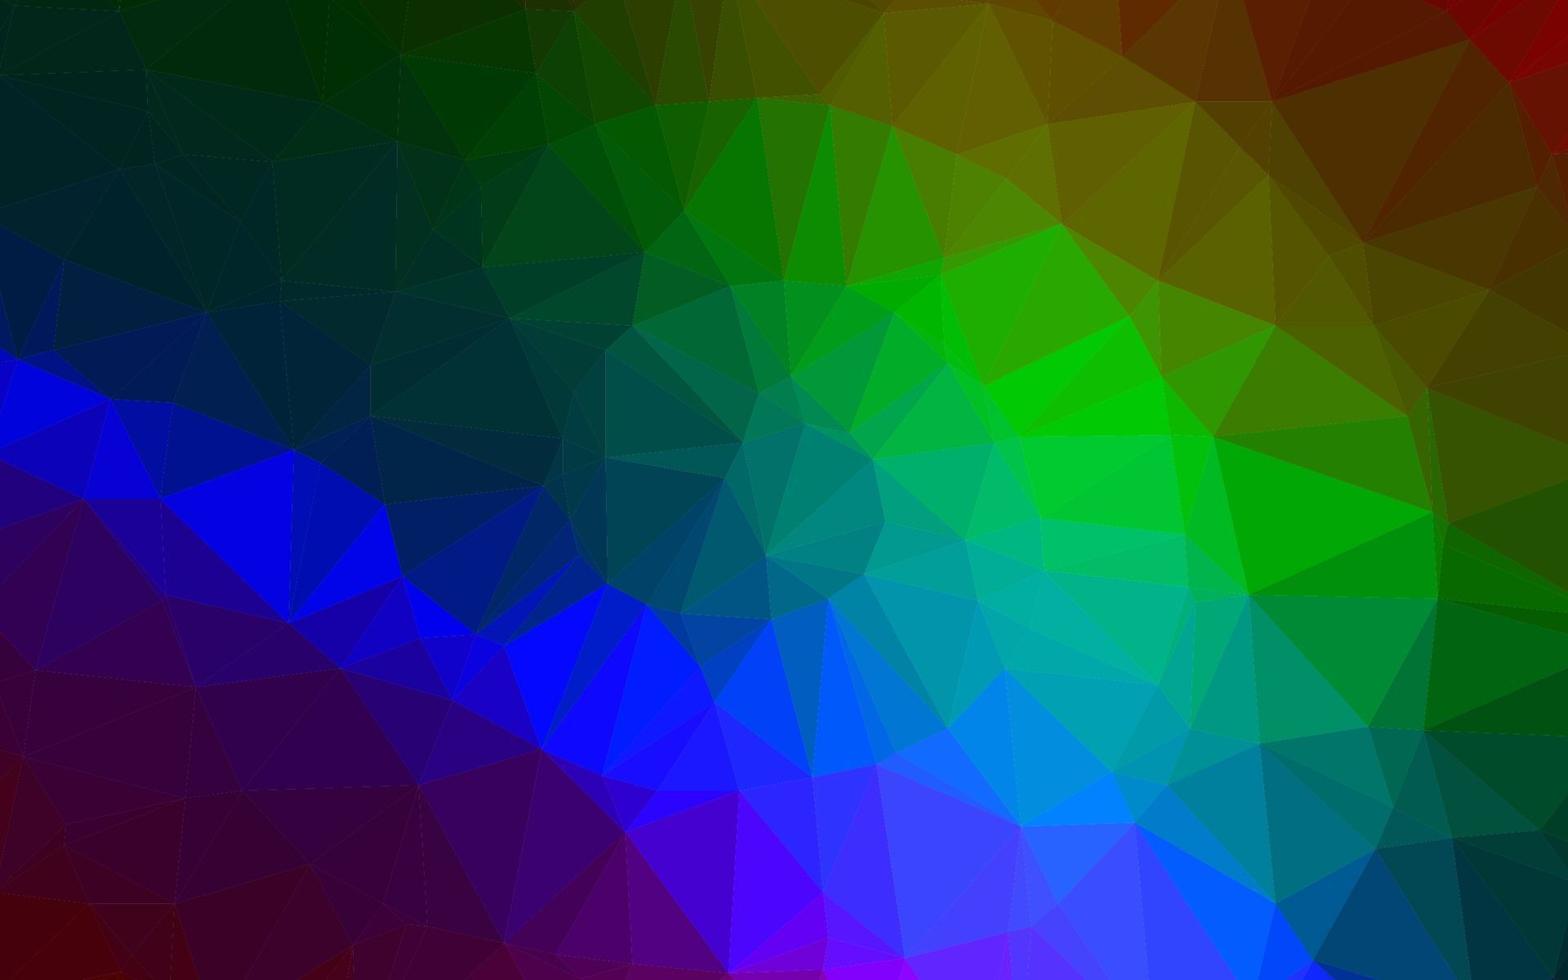 multicolore foncé, vecteur arc-en-ciel brillant fond triangulaire.